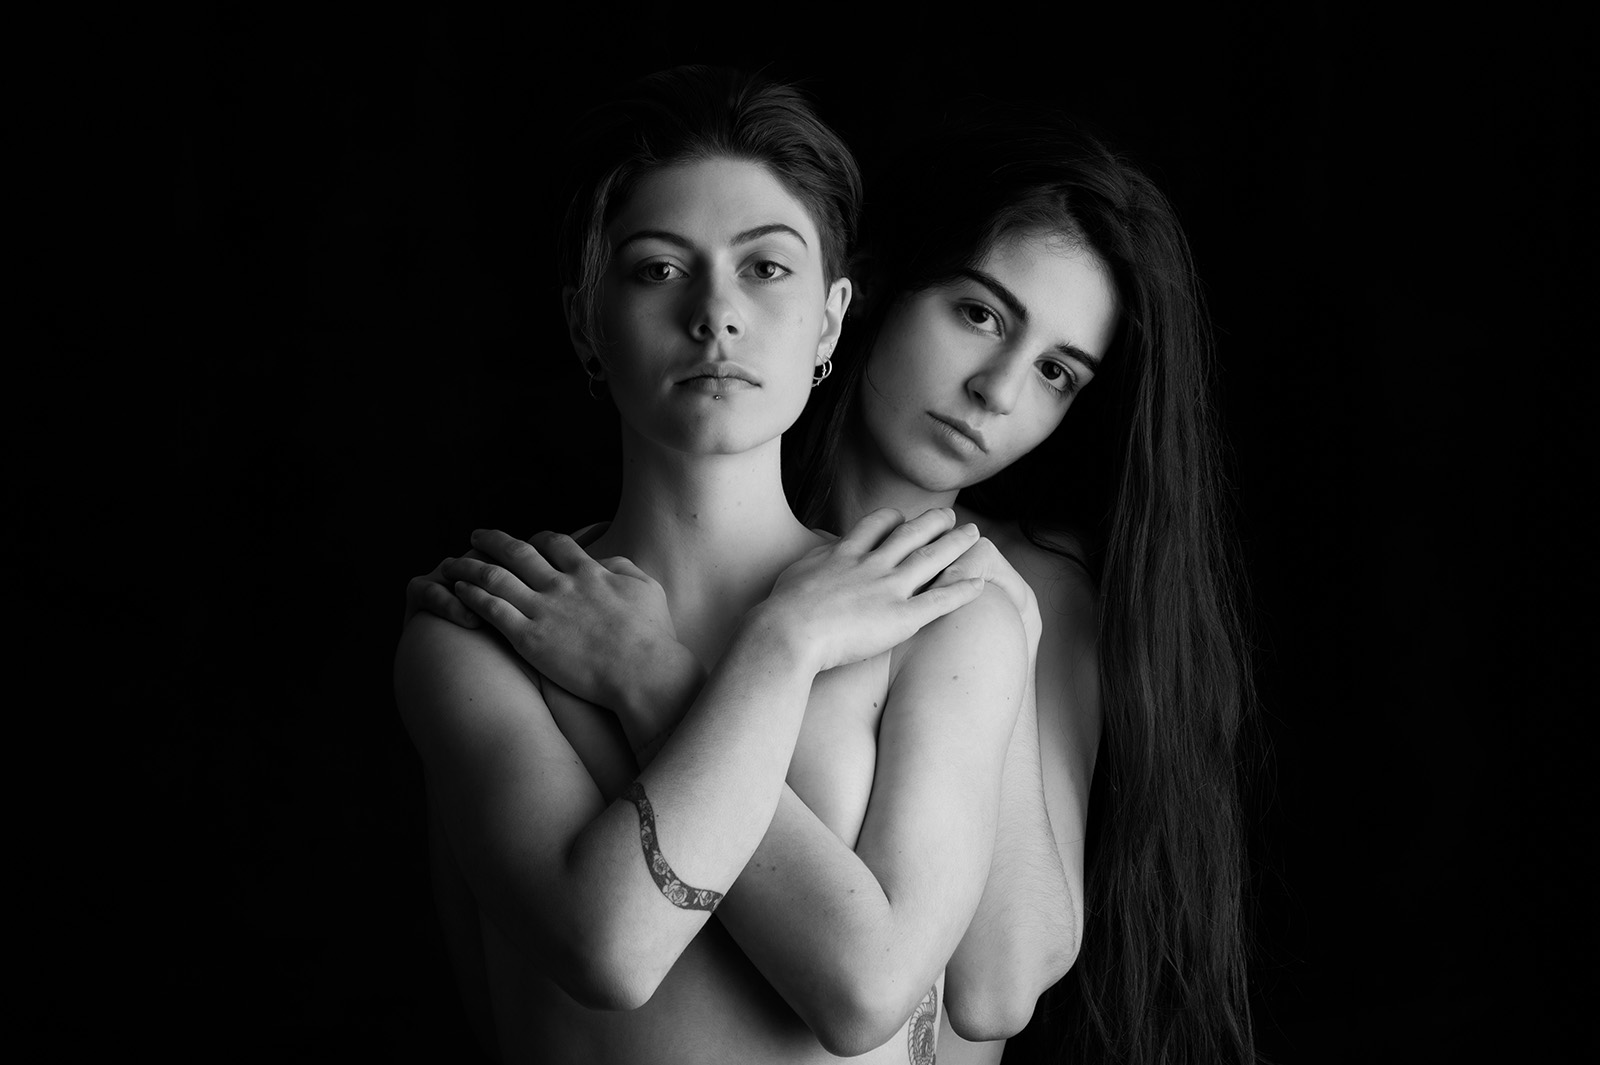 portrait studio noir et blanc de deux jeunes femmes l'une derrière l'autre, la première se cache la poitrine avec les bras